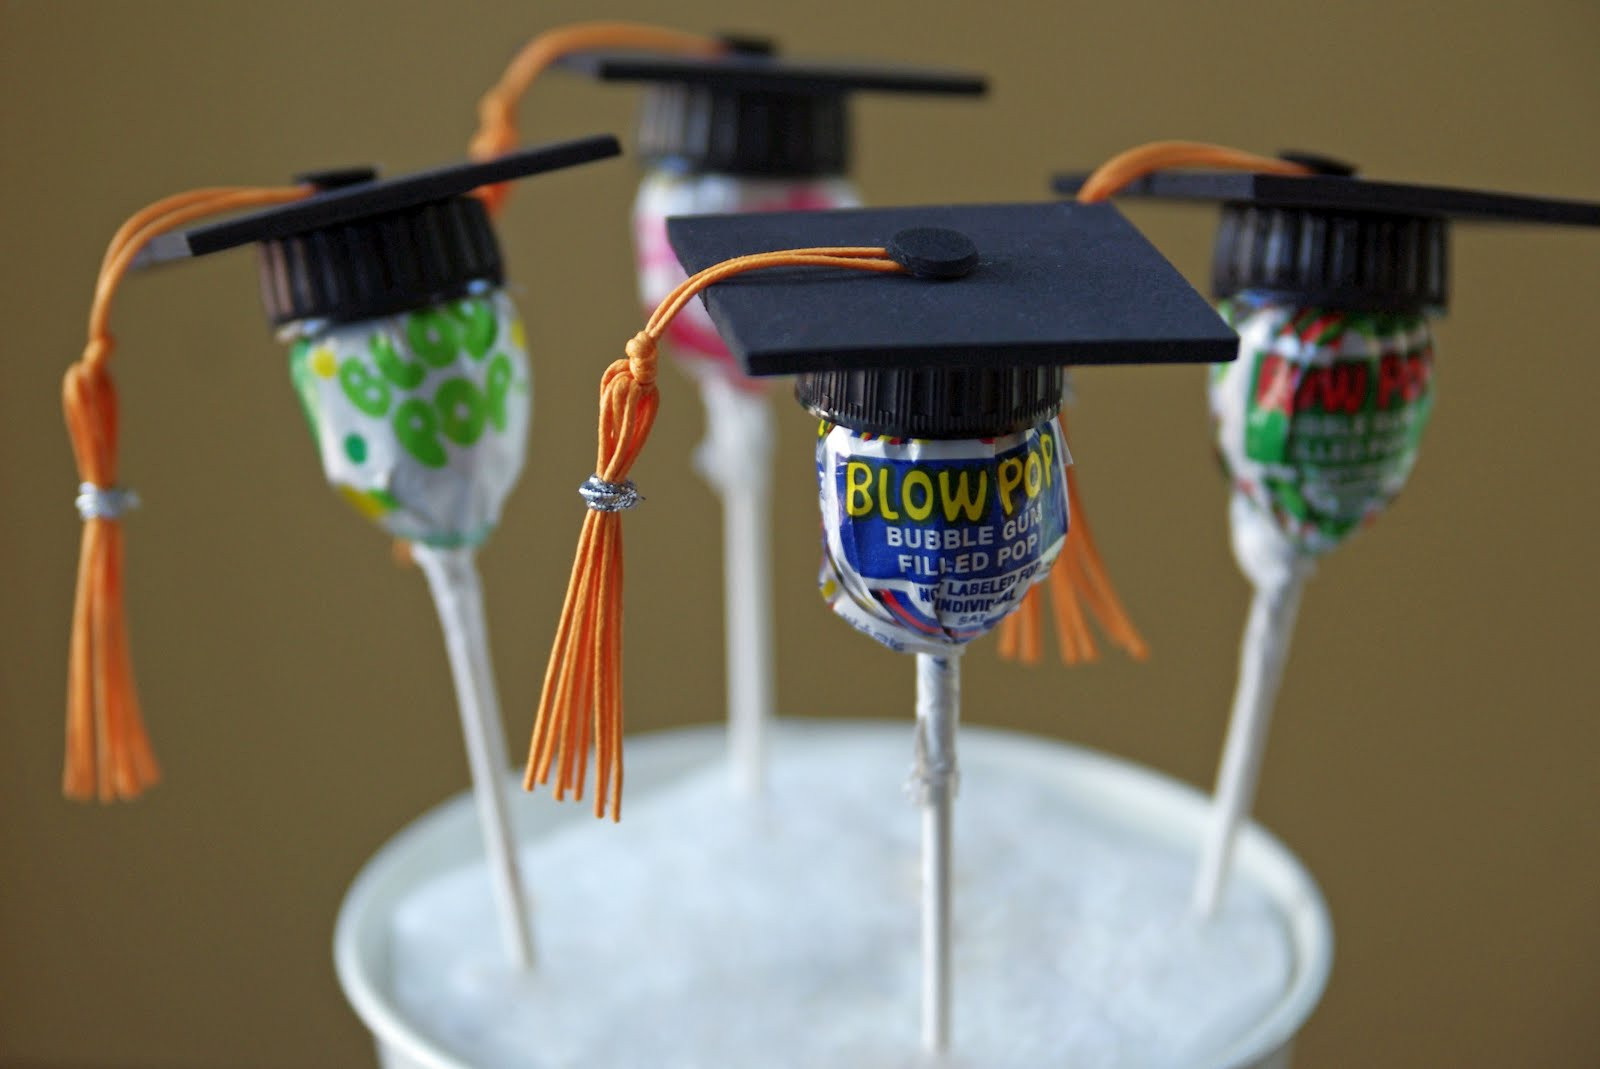 Graduation Party Souvenirs Ideas
 Life in Wonderland DIY Graduation Favors